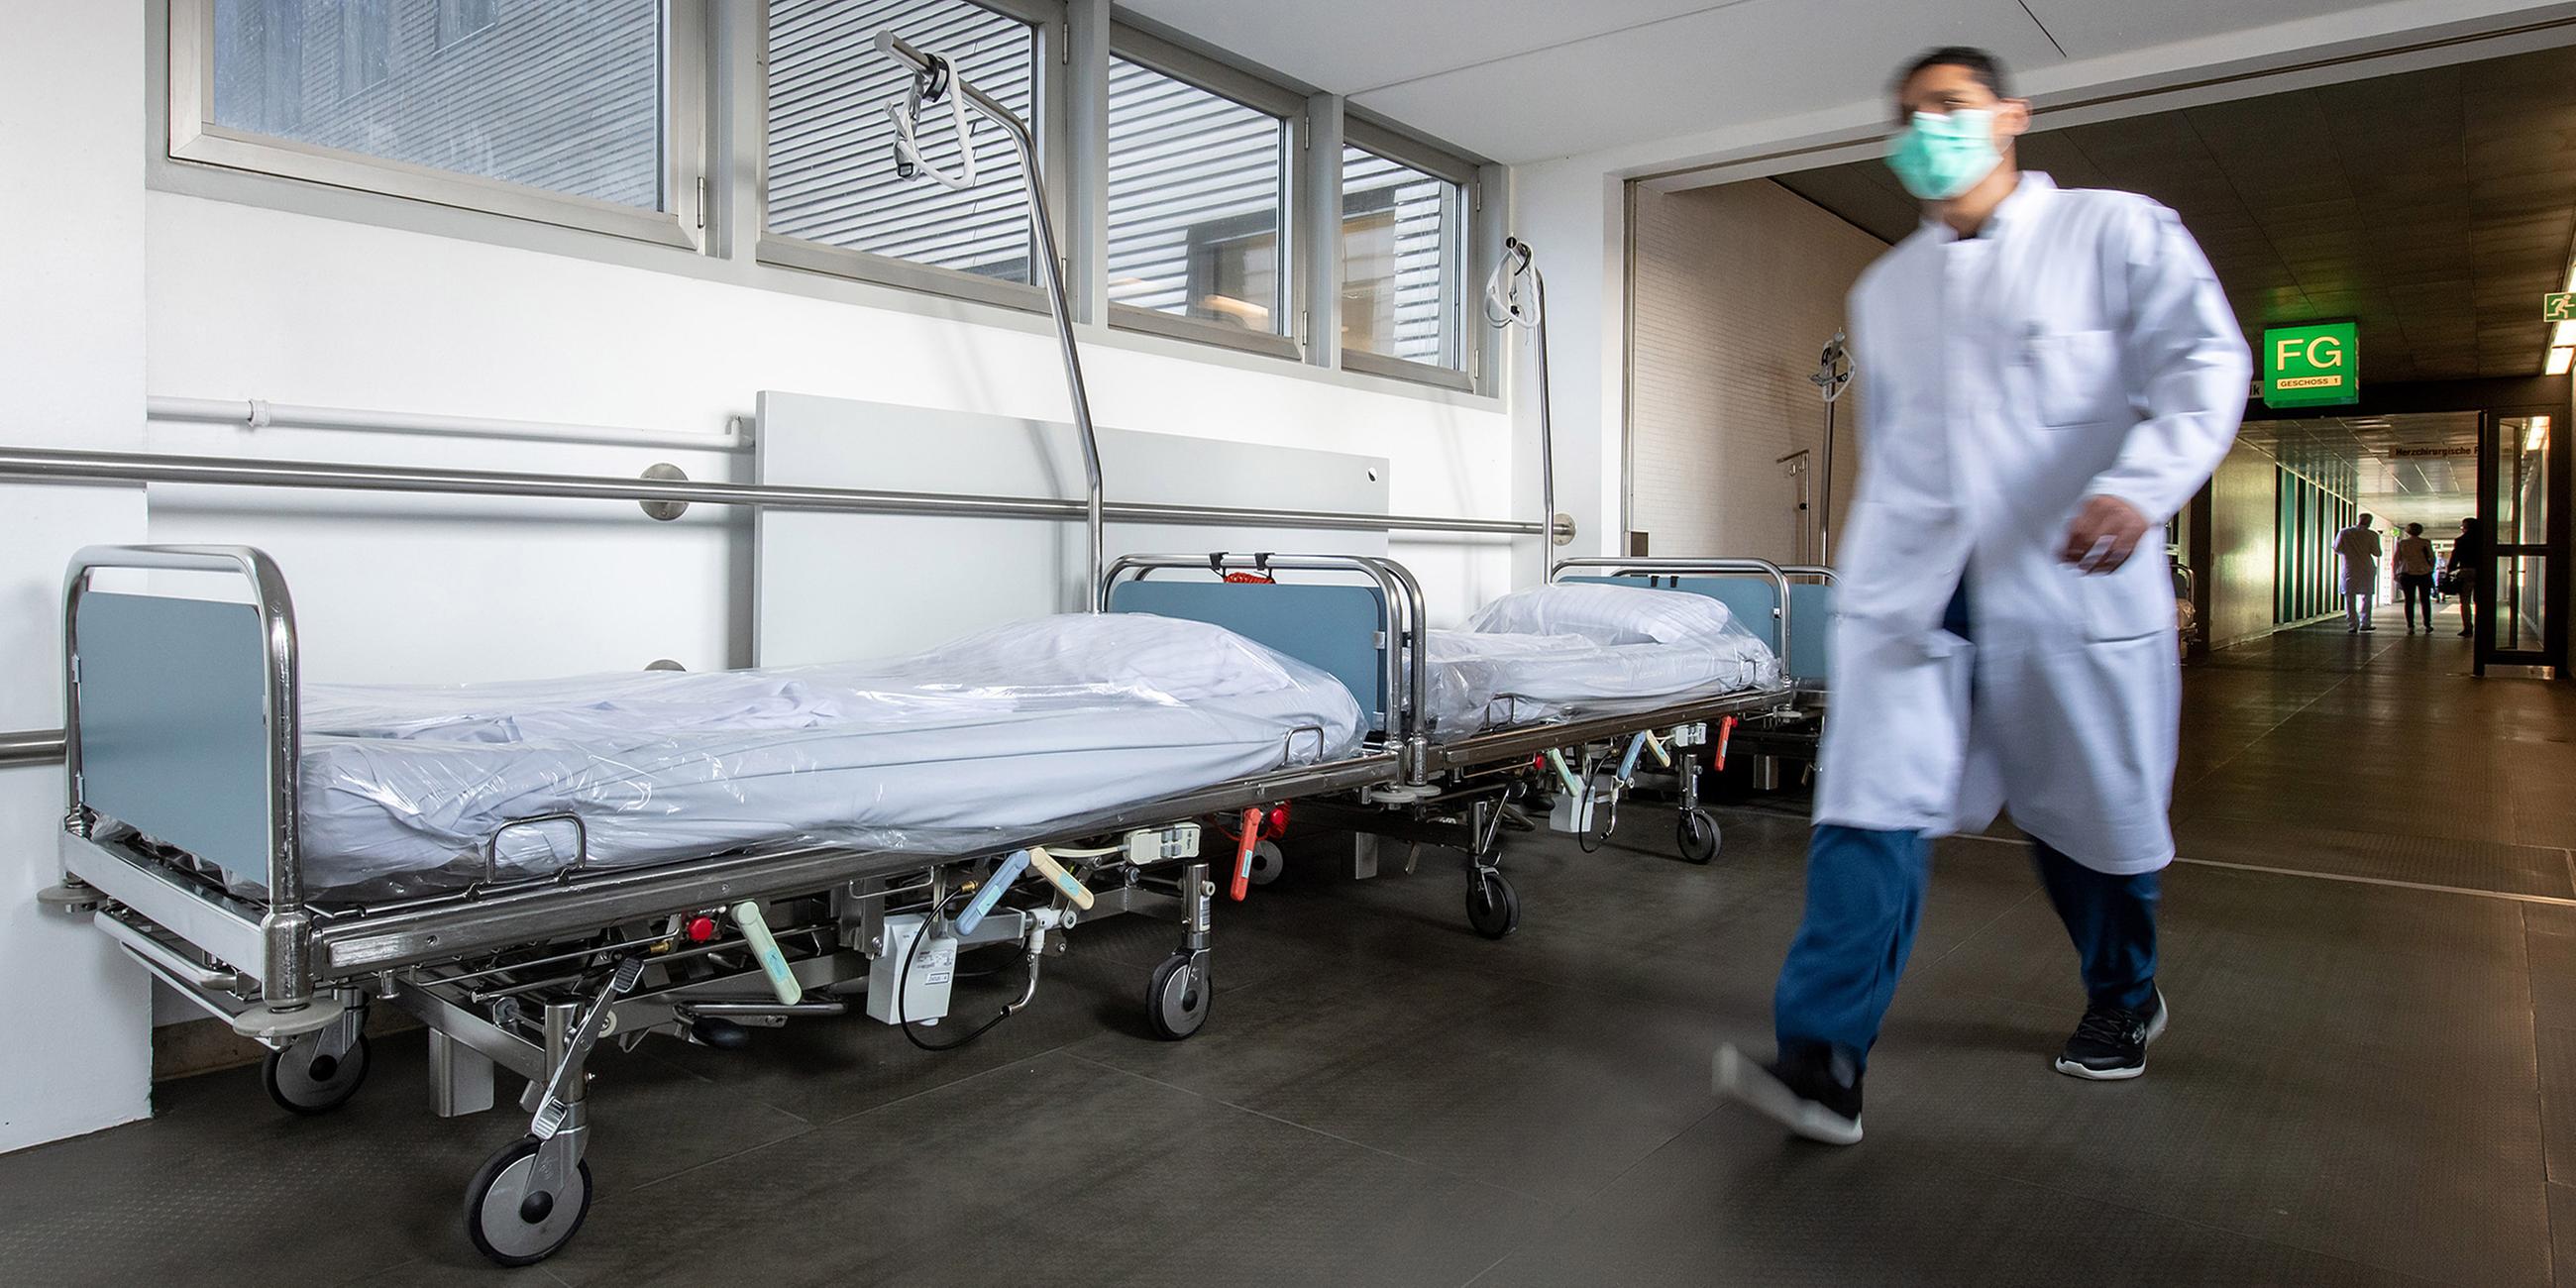 Archiv: Leere Patientenbetten steht im Krankenhaus Großhadern auf dem Gang am 09.04.2020 in München